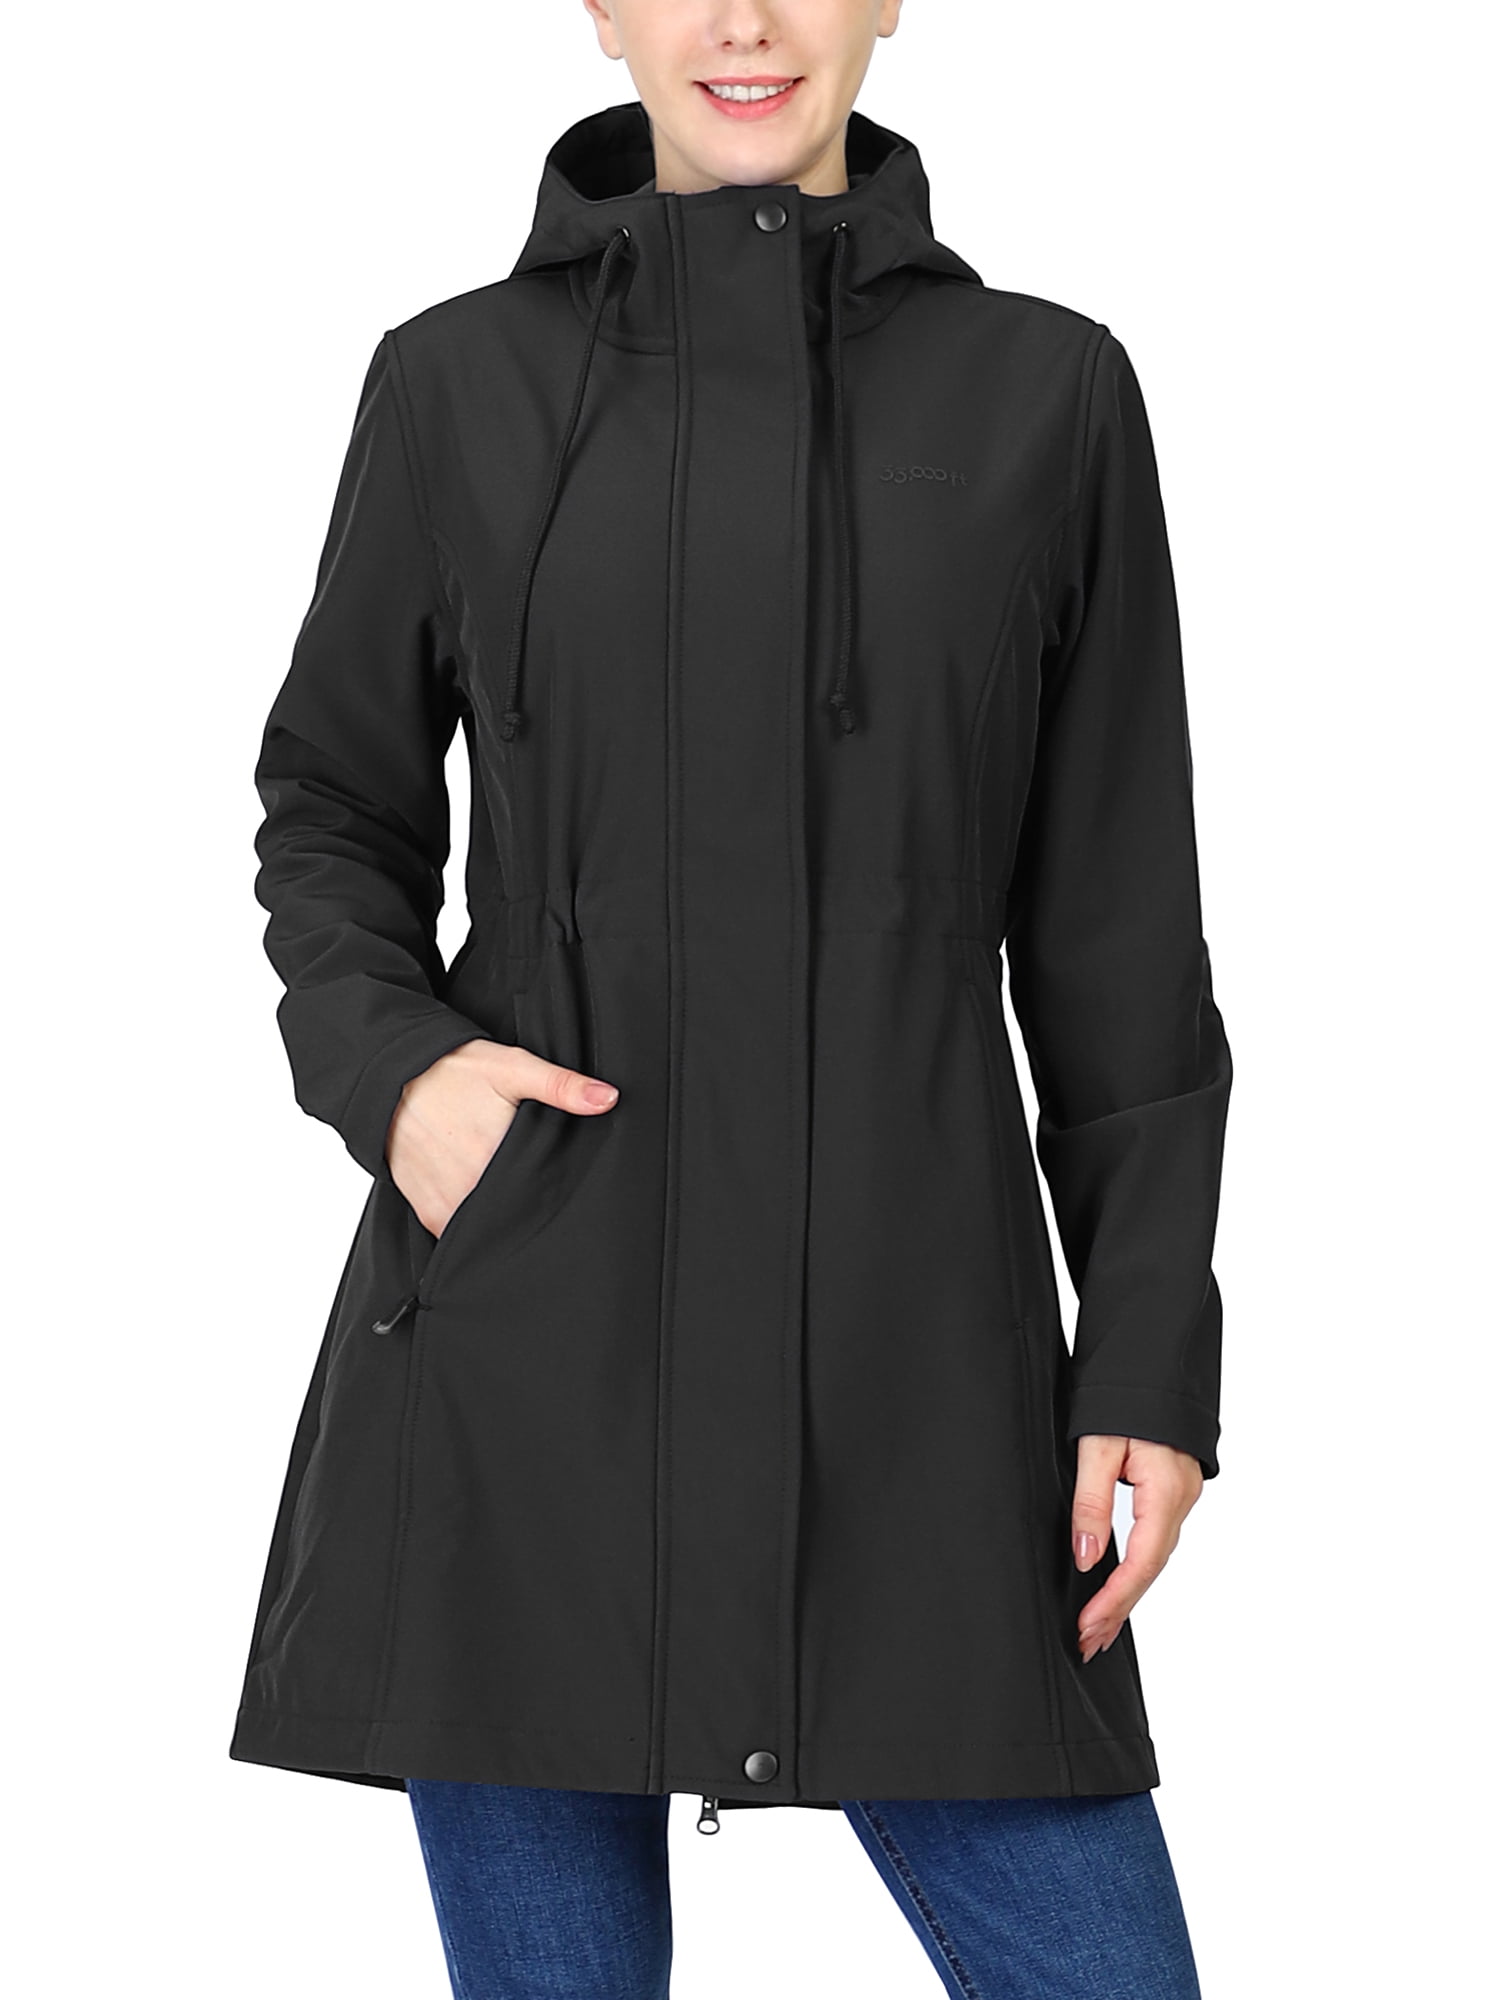 33,000ft Womens Softshell Long Jacket with Hood Fleece Lined Windproof Warm up Waterproof Windbreaker 